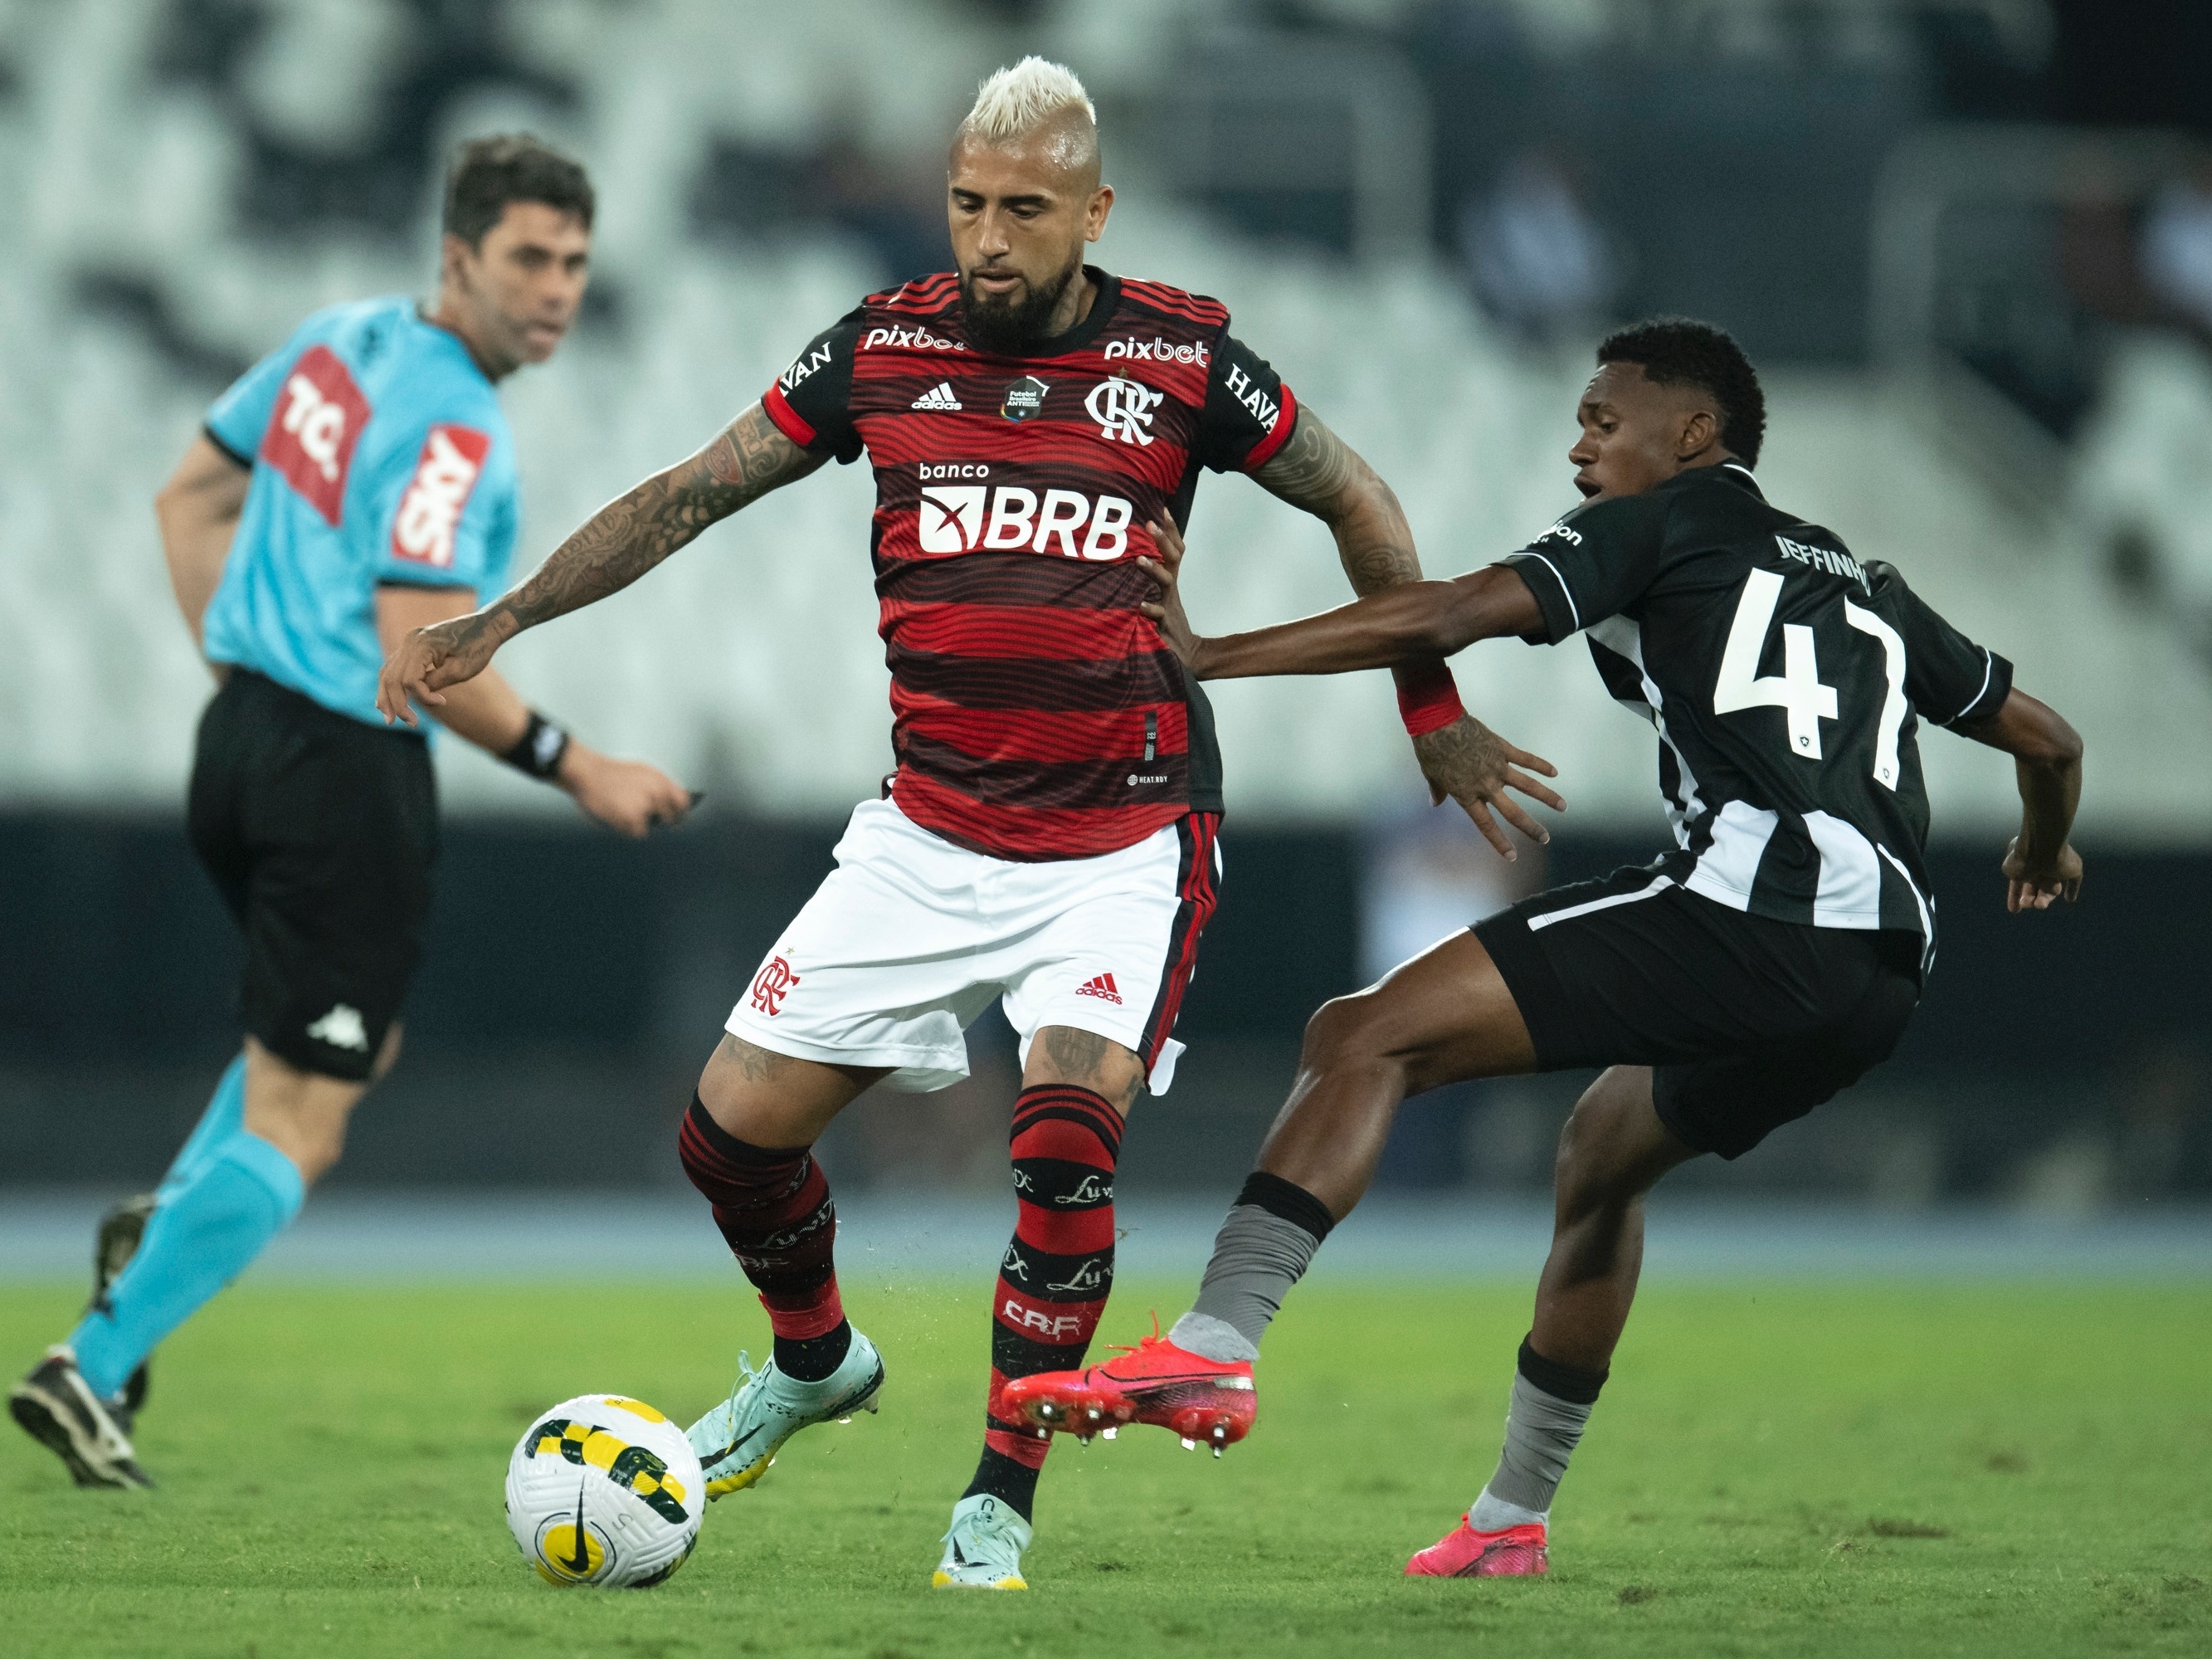 Clube de Regatas do Flamengo - Flamengo x Botafogo? Jogo ao vivo e  EXCLUSIVO no Premiere